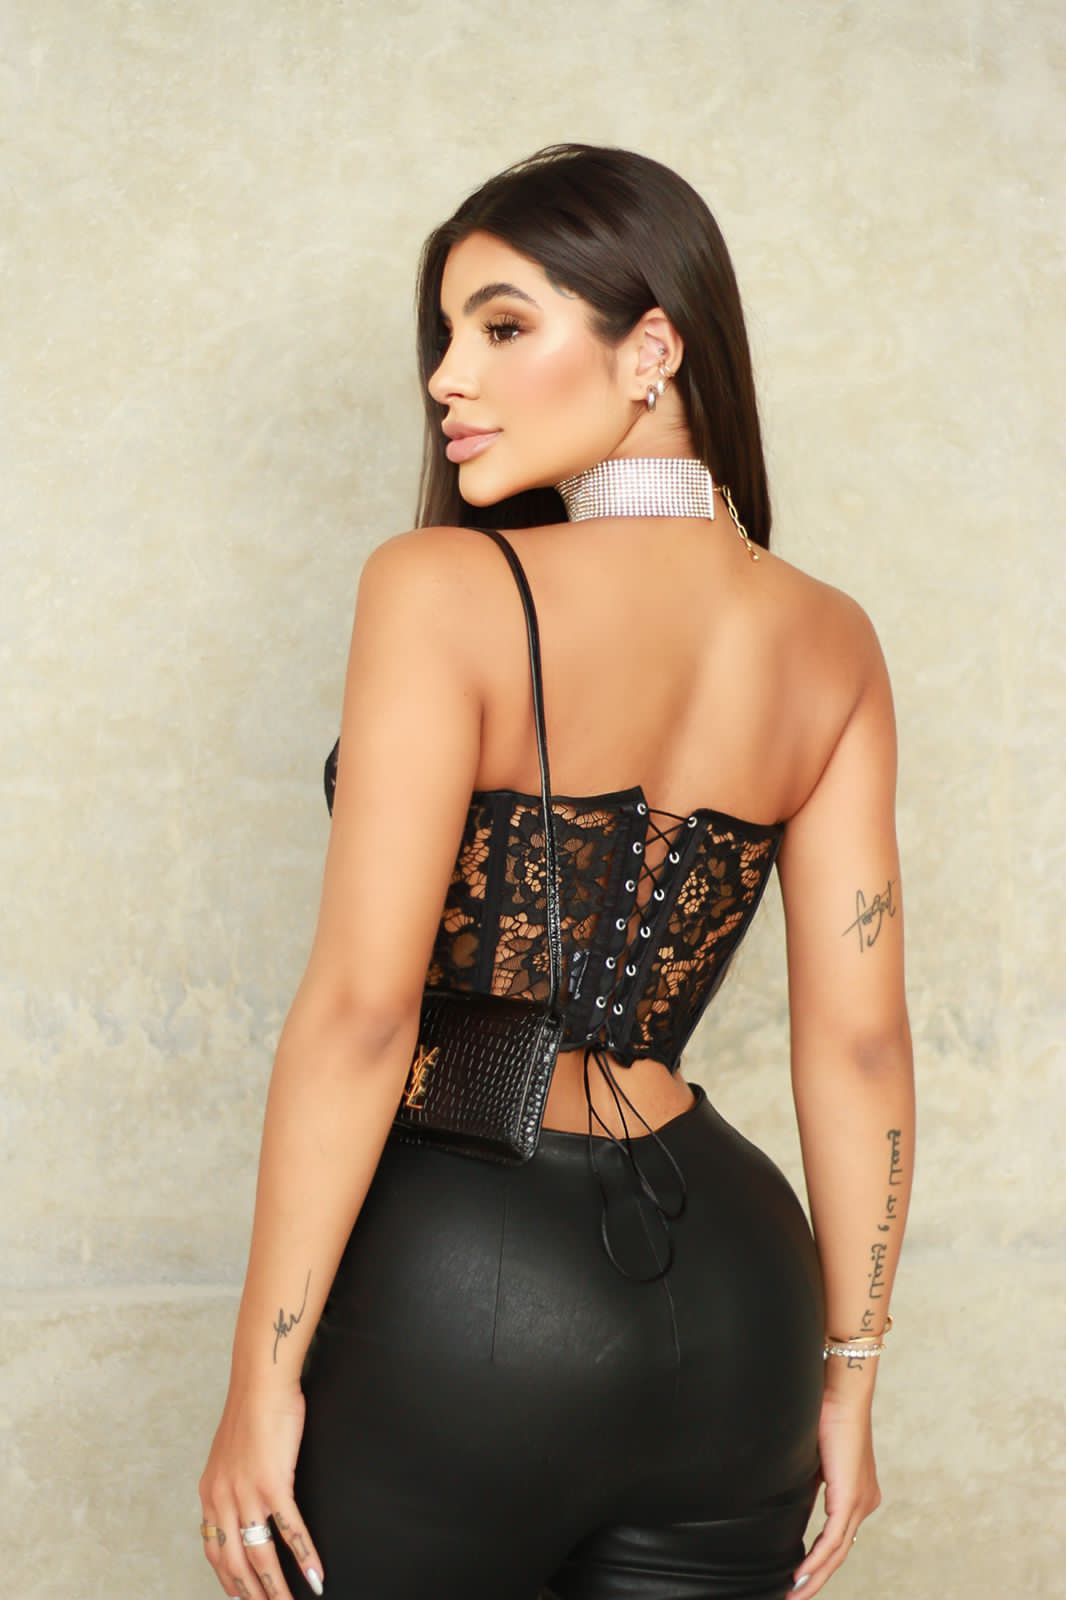 Cropped estruturado com barbatana de poliamida acetinado estilo corset / corselet tamanho único tendência fashion confortável!